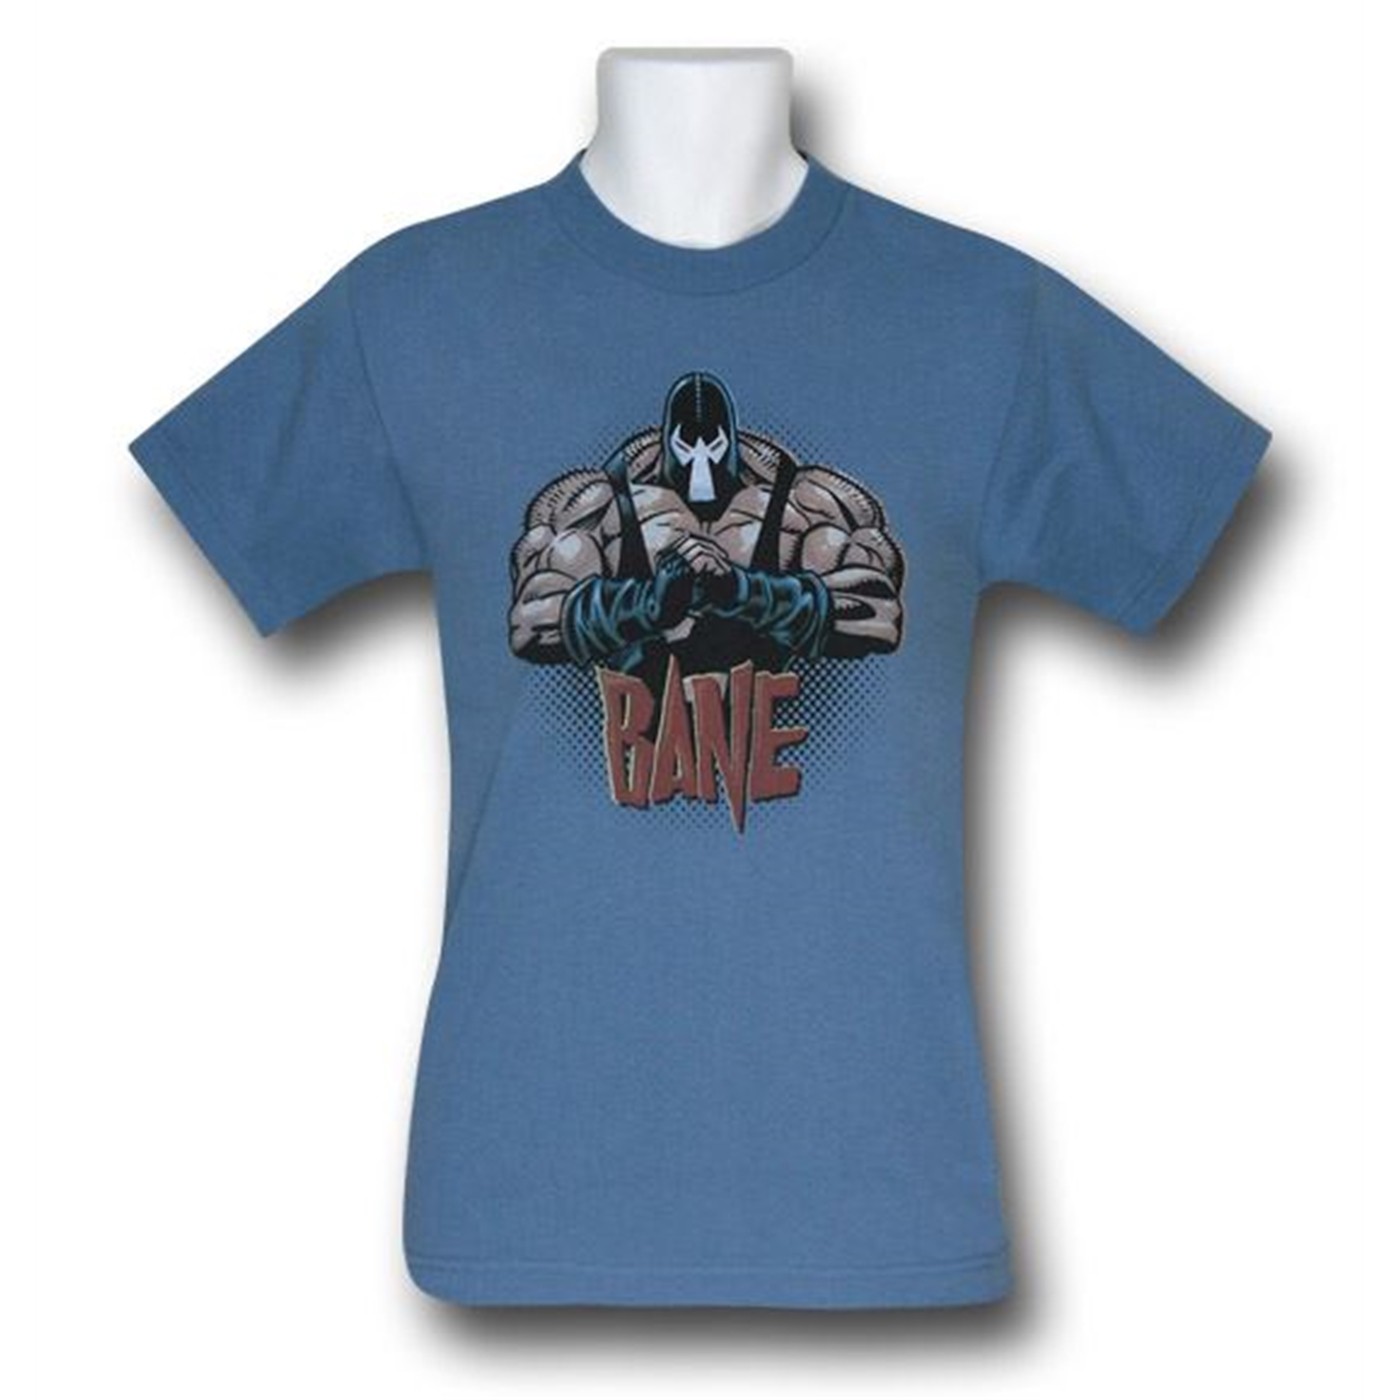 Bane Will Break You Kids T-Shirt